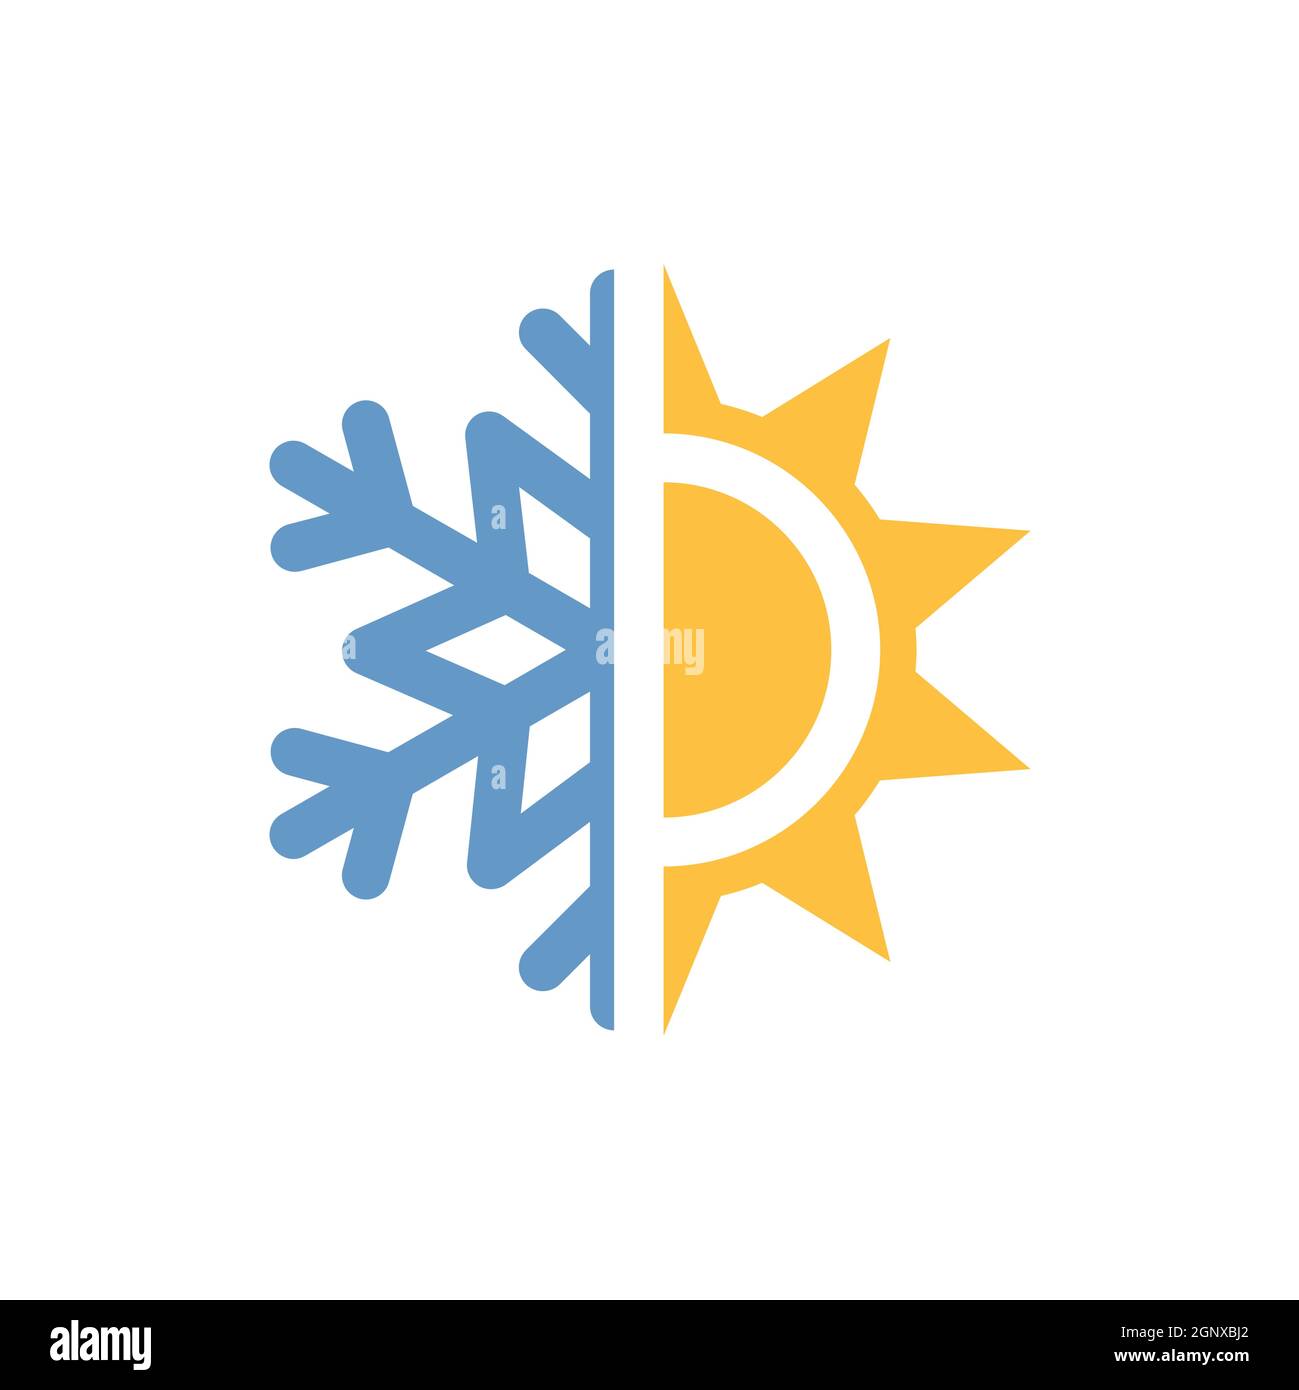 Simbolo del sole e del fiocco di neve del condizionatore d'aria.  Illustrazione vettoriale. Icona calda e fredda in disegno piatto su sfondo  blu Immagine e Vettoriale - Alamy